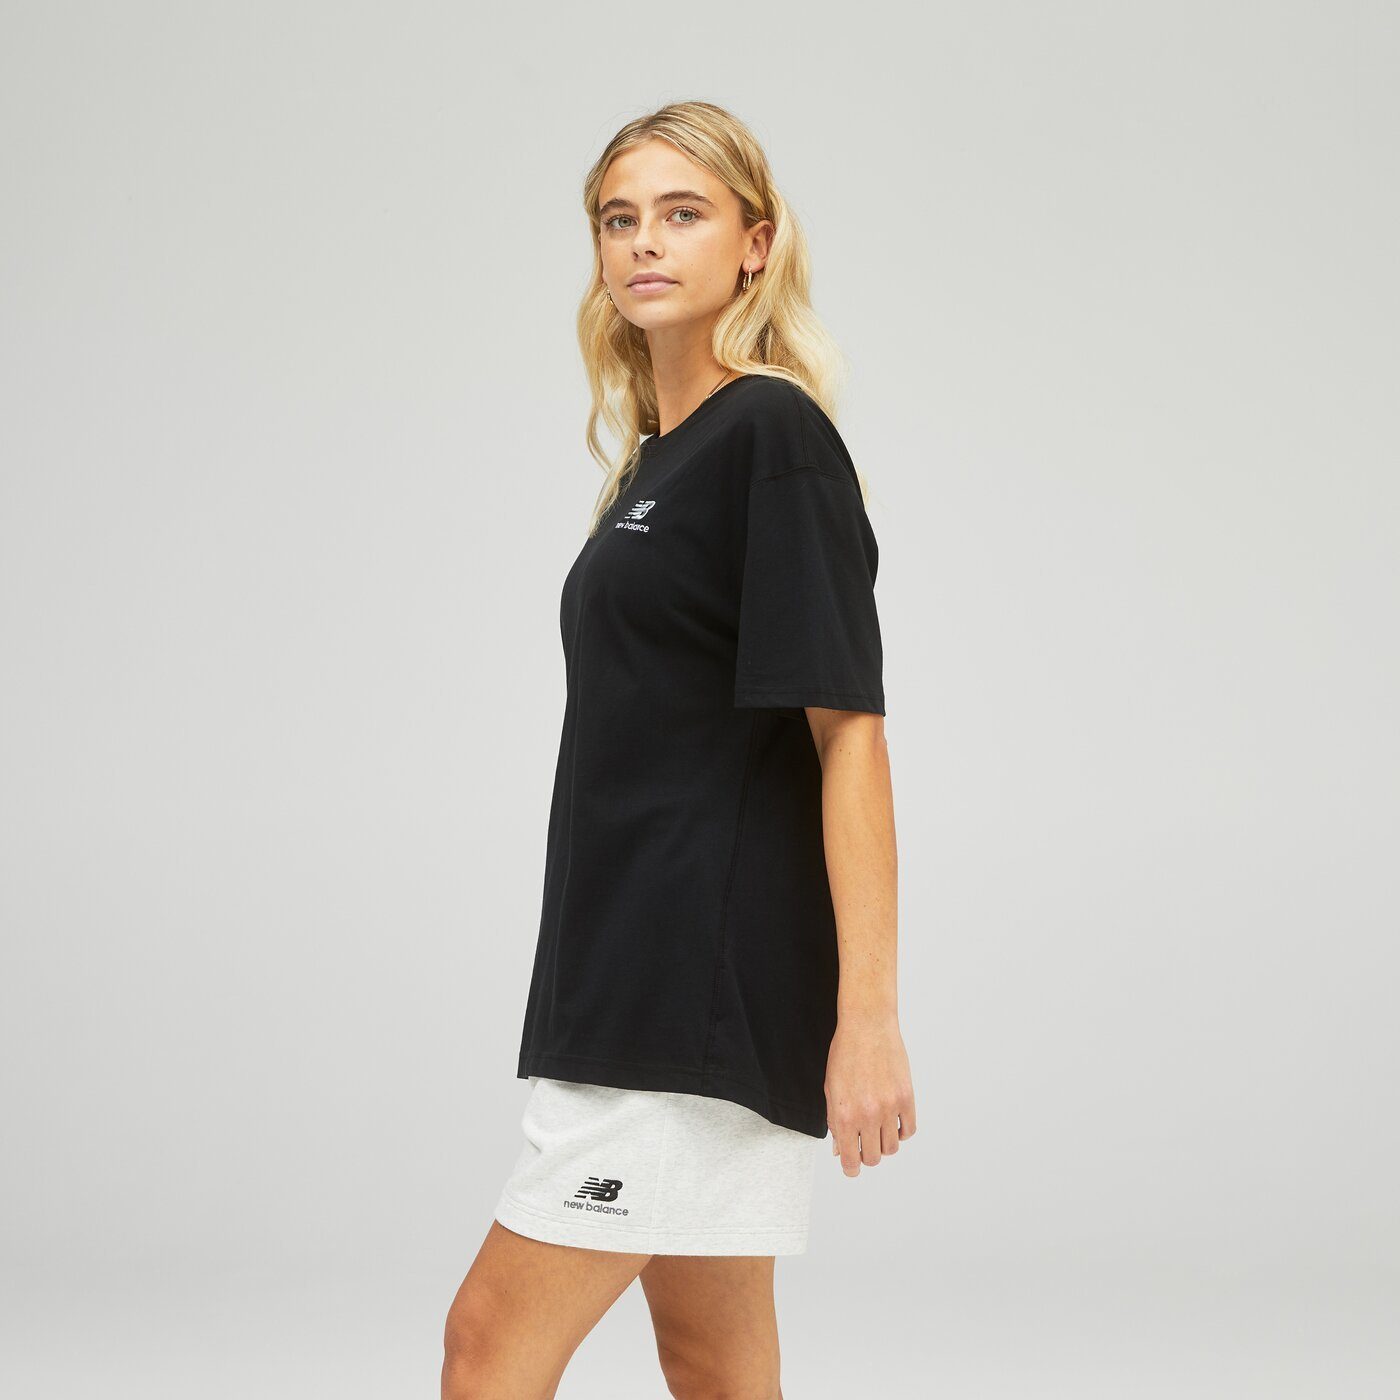 New Kurzarmshirt T-Shirt BK Balance Cotton Uni-ssentials